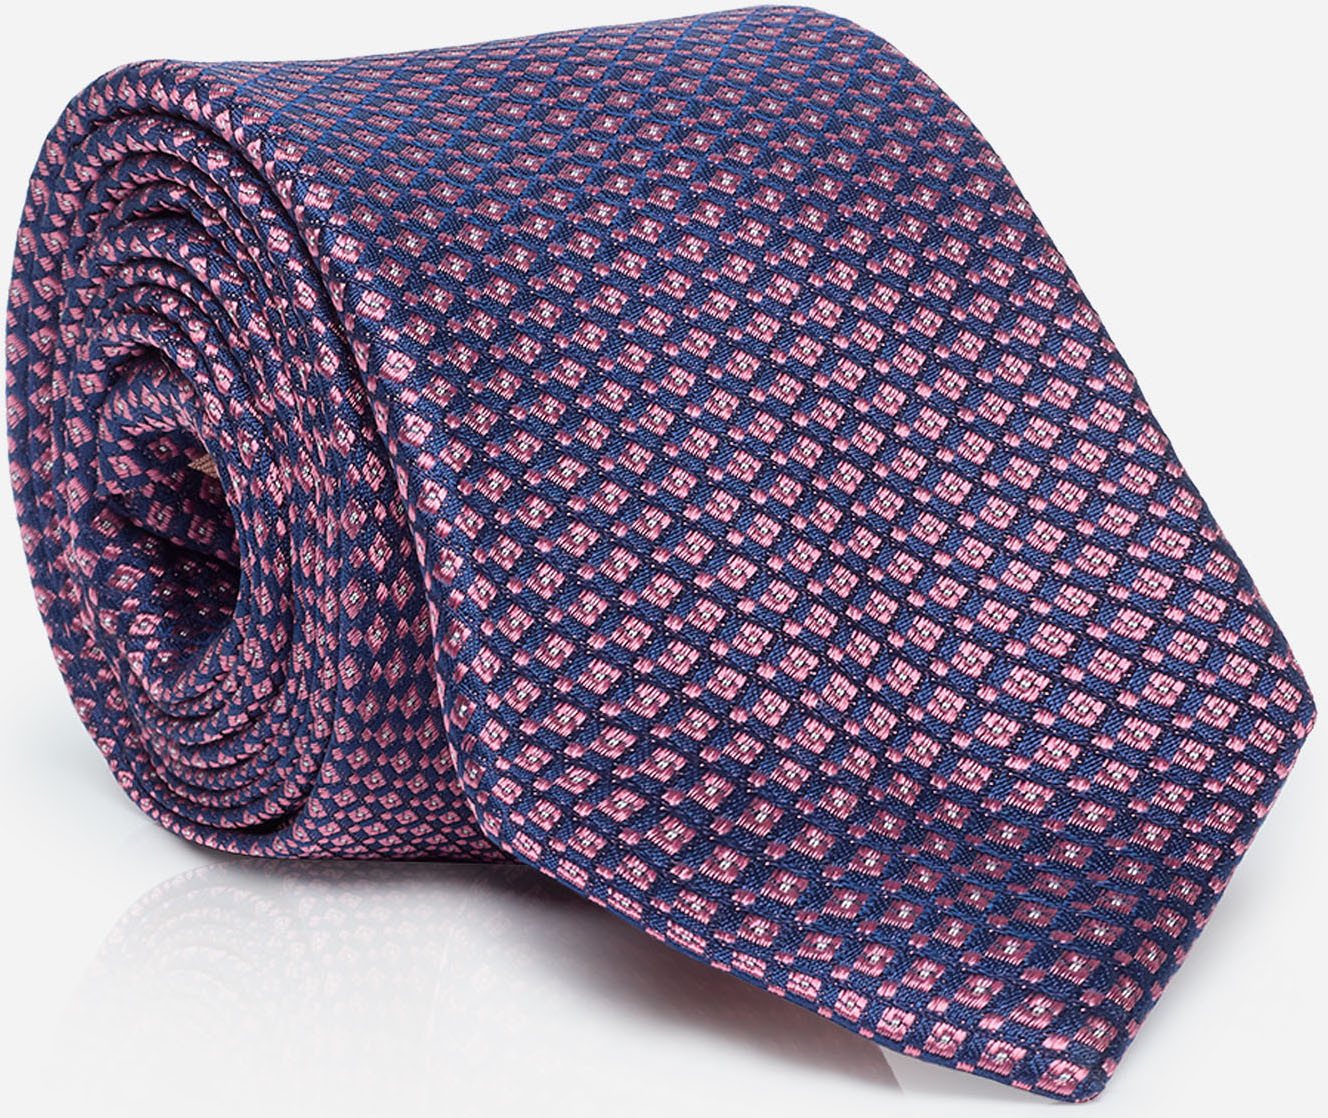 MONTI Krawatte LIANO mit Wolleinlage für angenehmes Tragegefühl und Formstabilität von MONTI